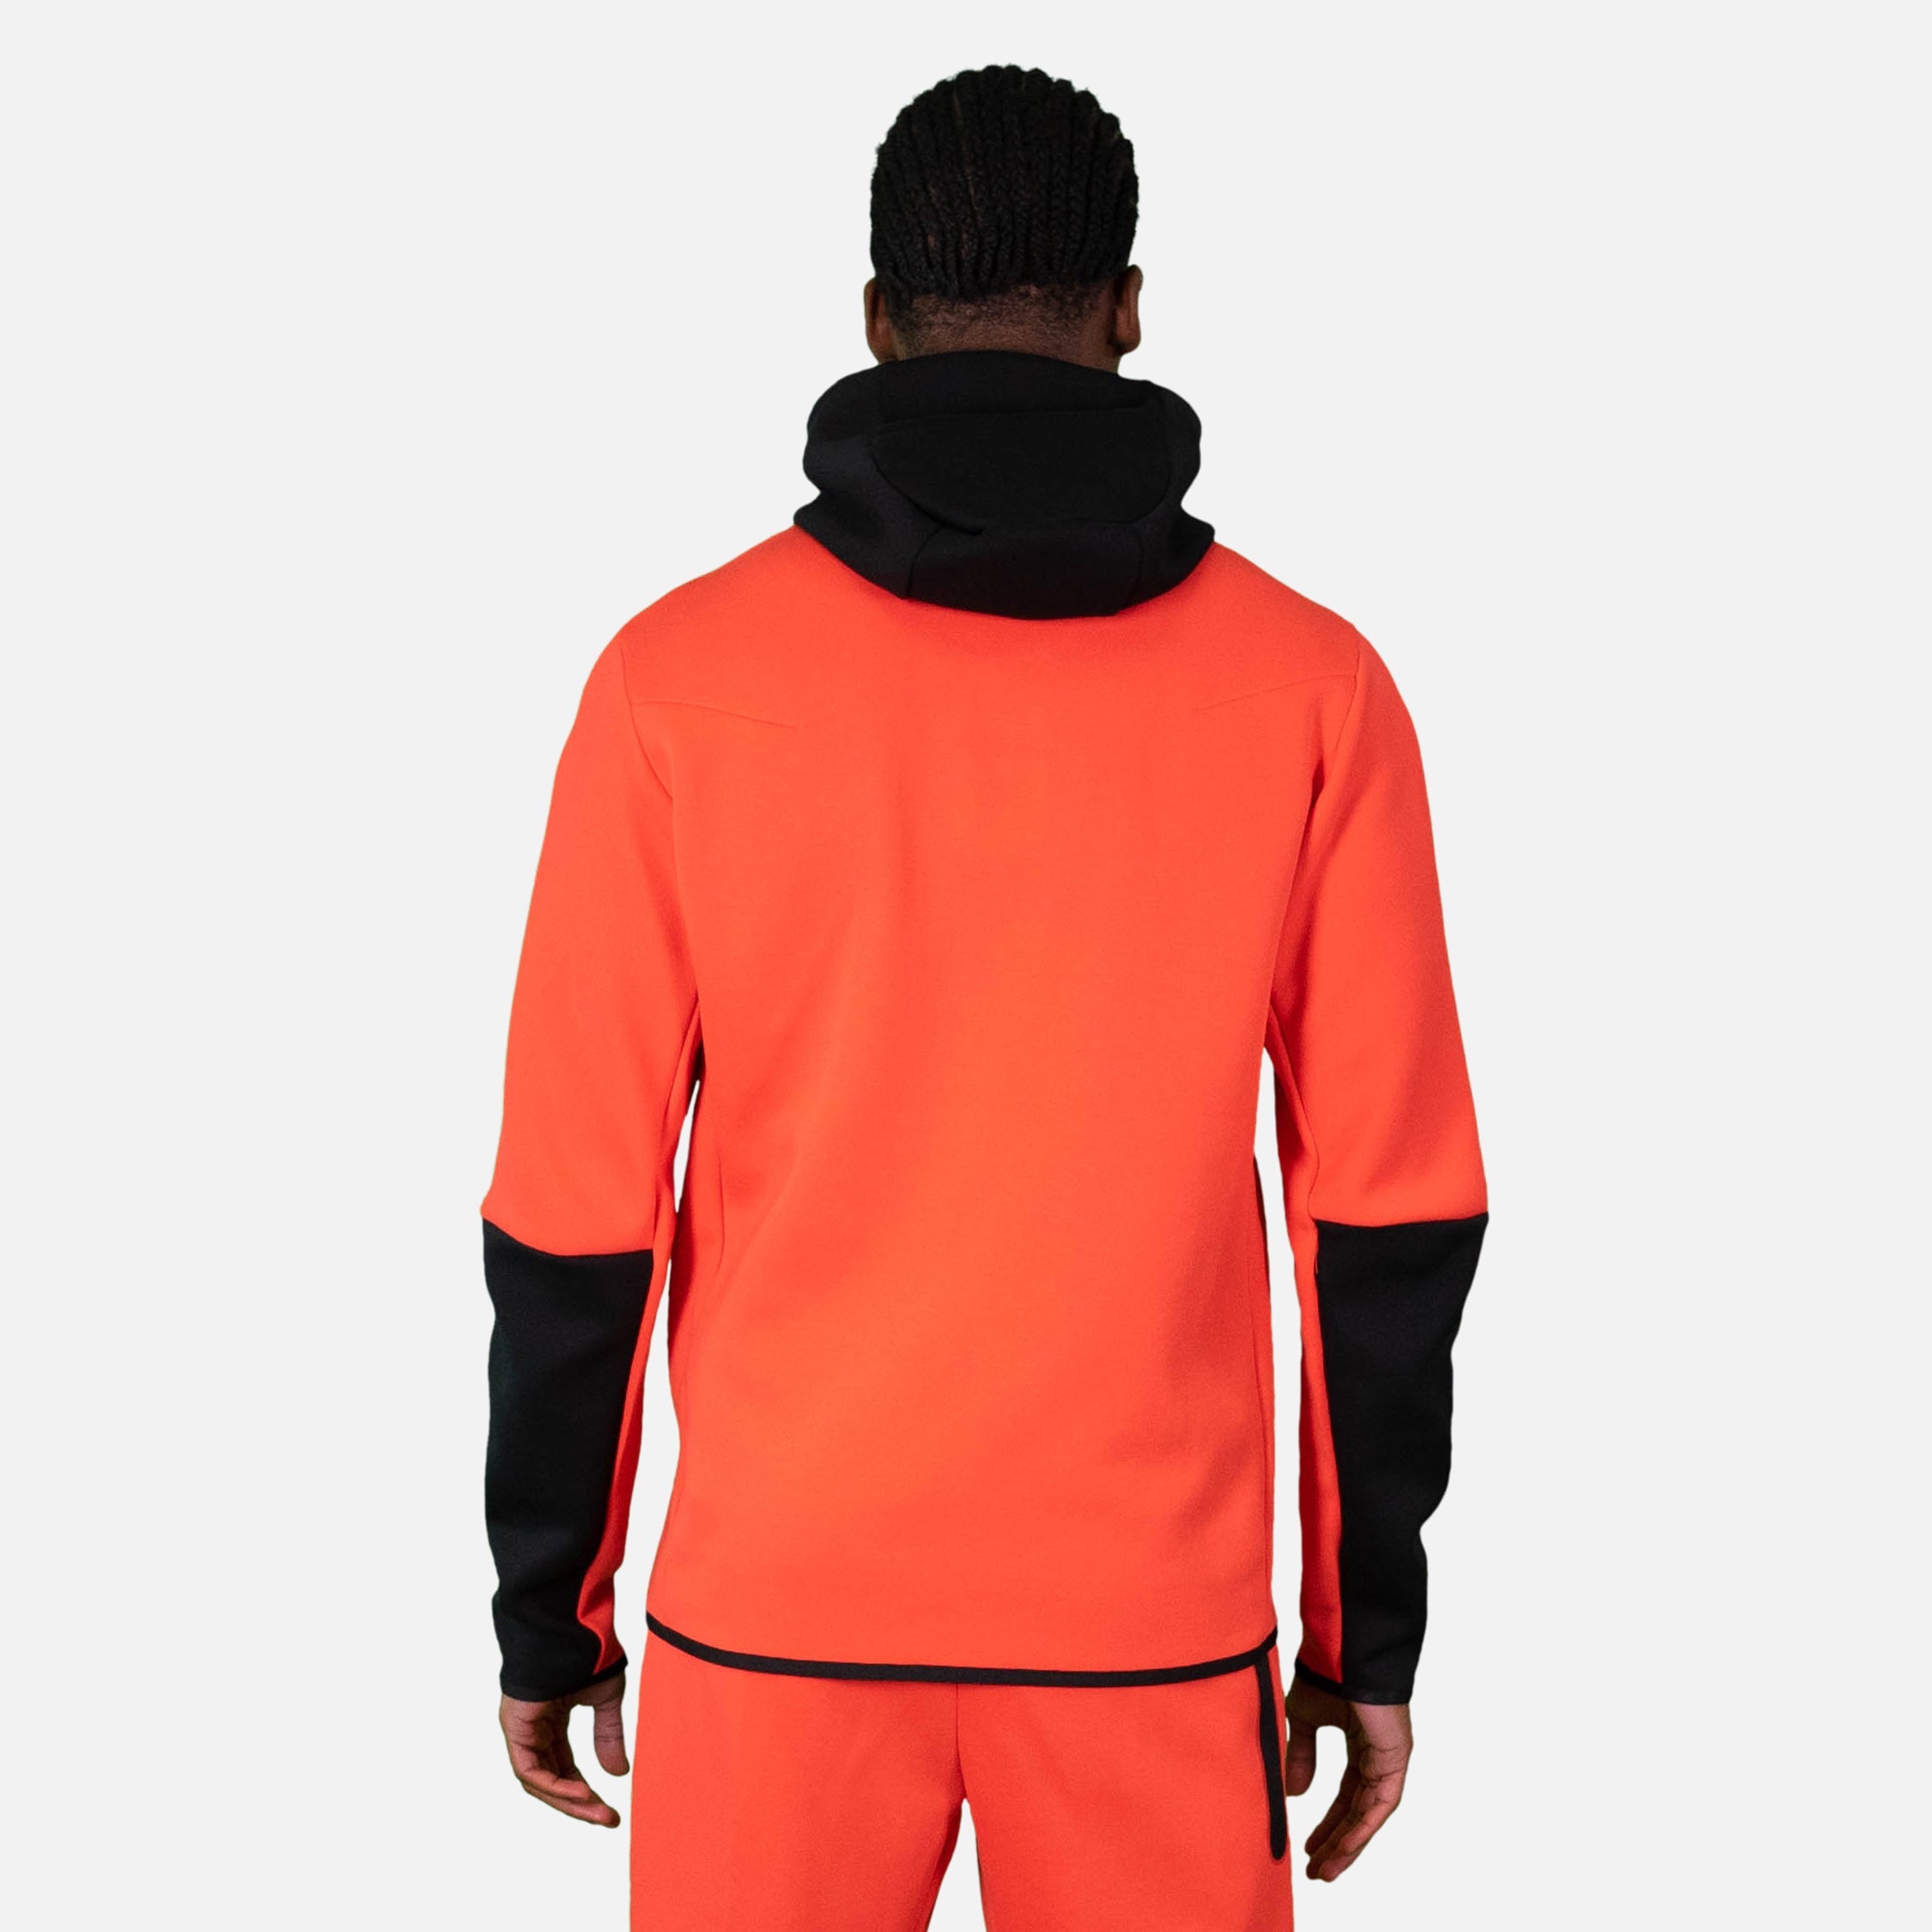 Veste à capuche Nike Tech Fleece - Rouge/Noir